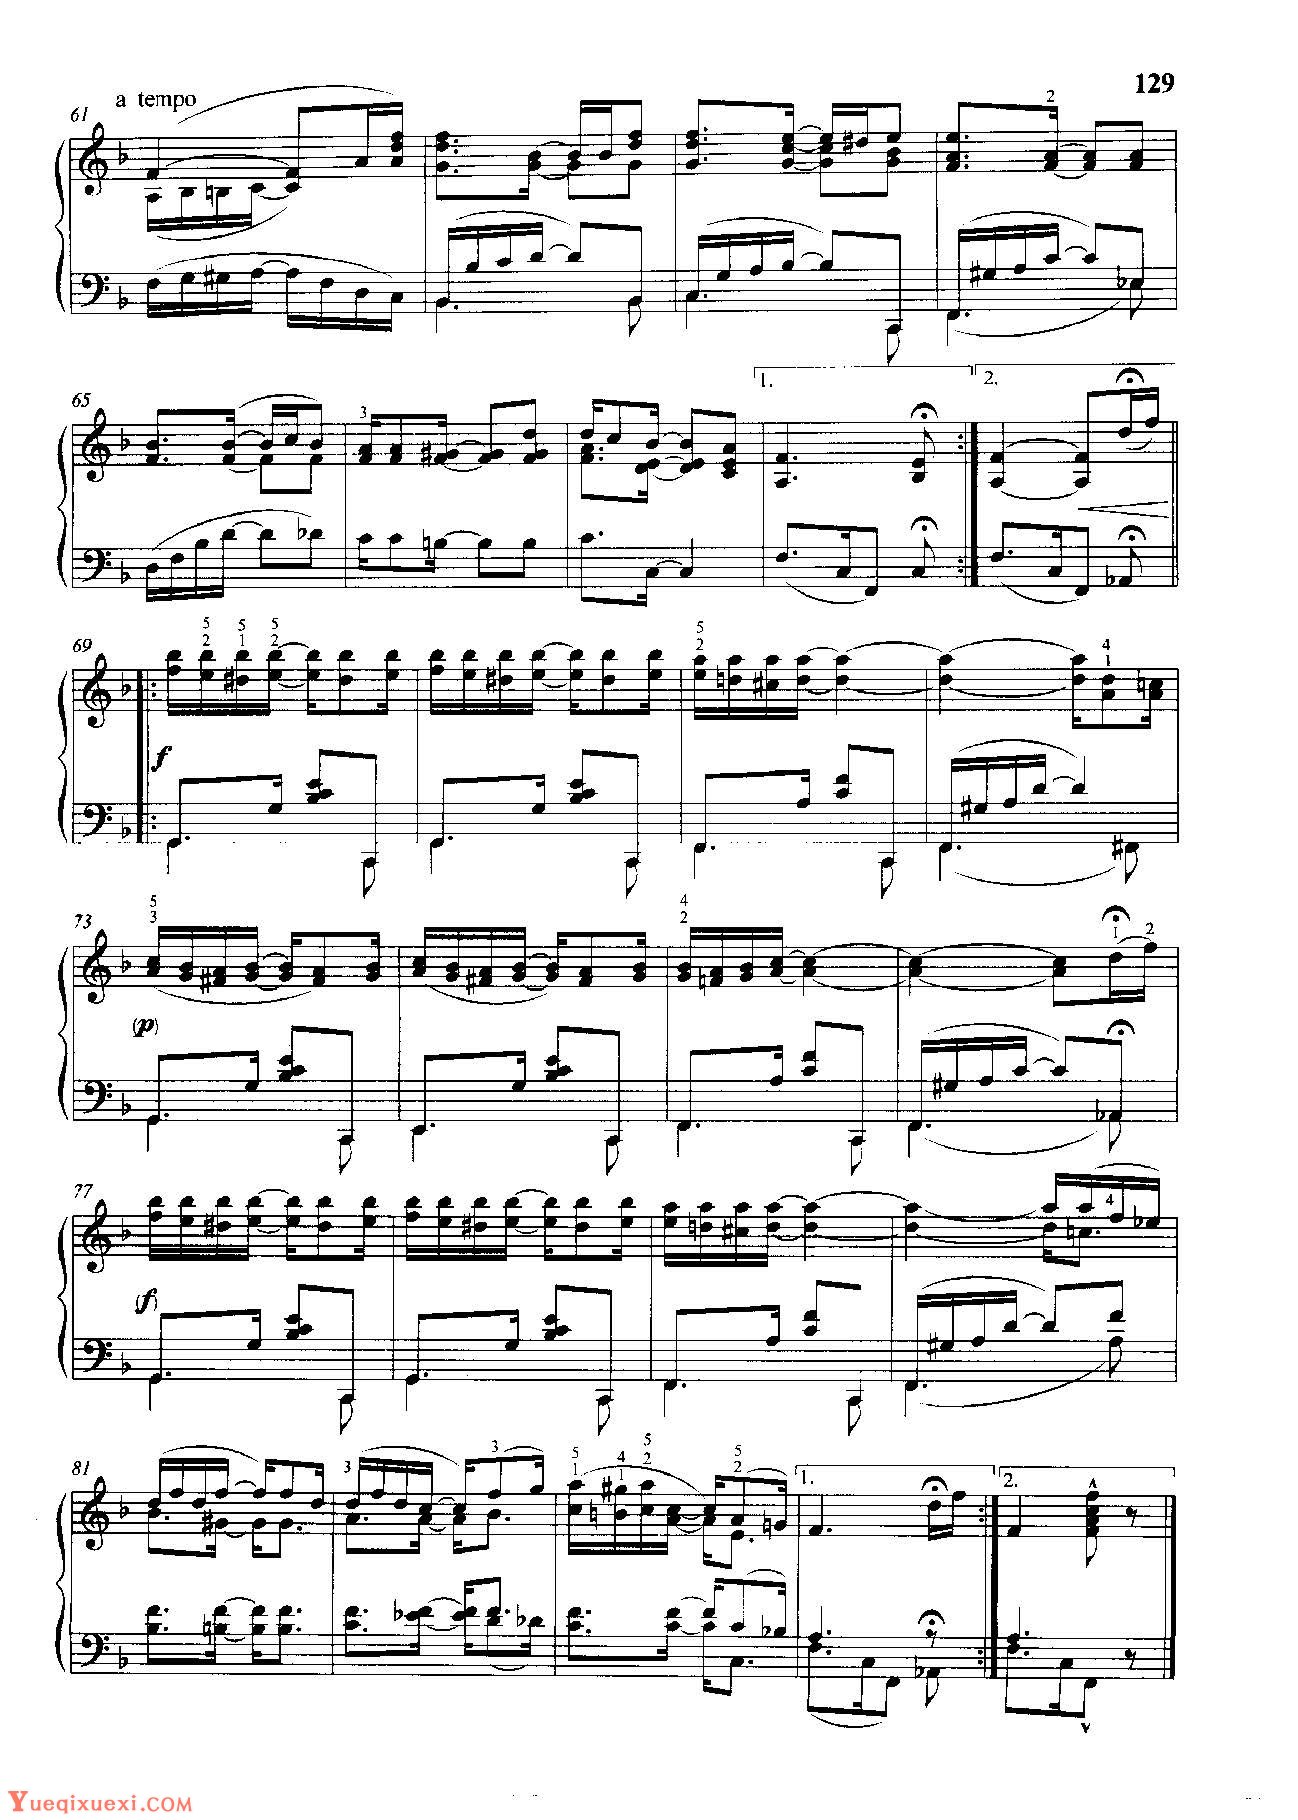 雷格泰姆钢琴乐谱《慰藉》雷格泰姆之王斯科特·乔普林